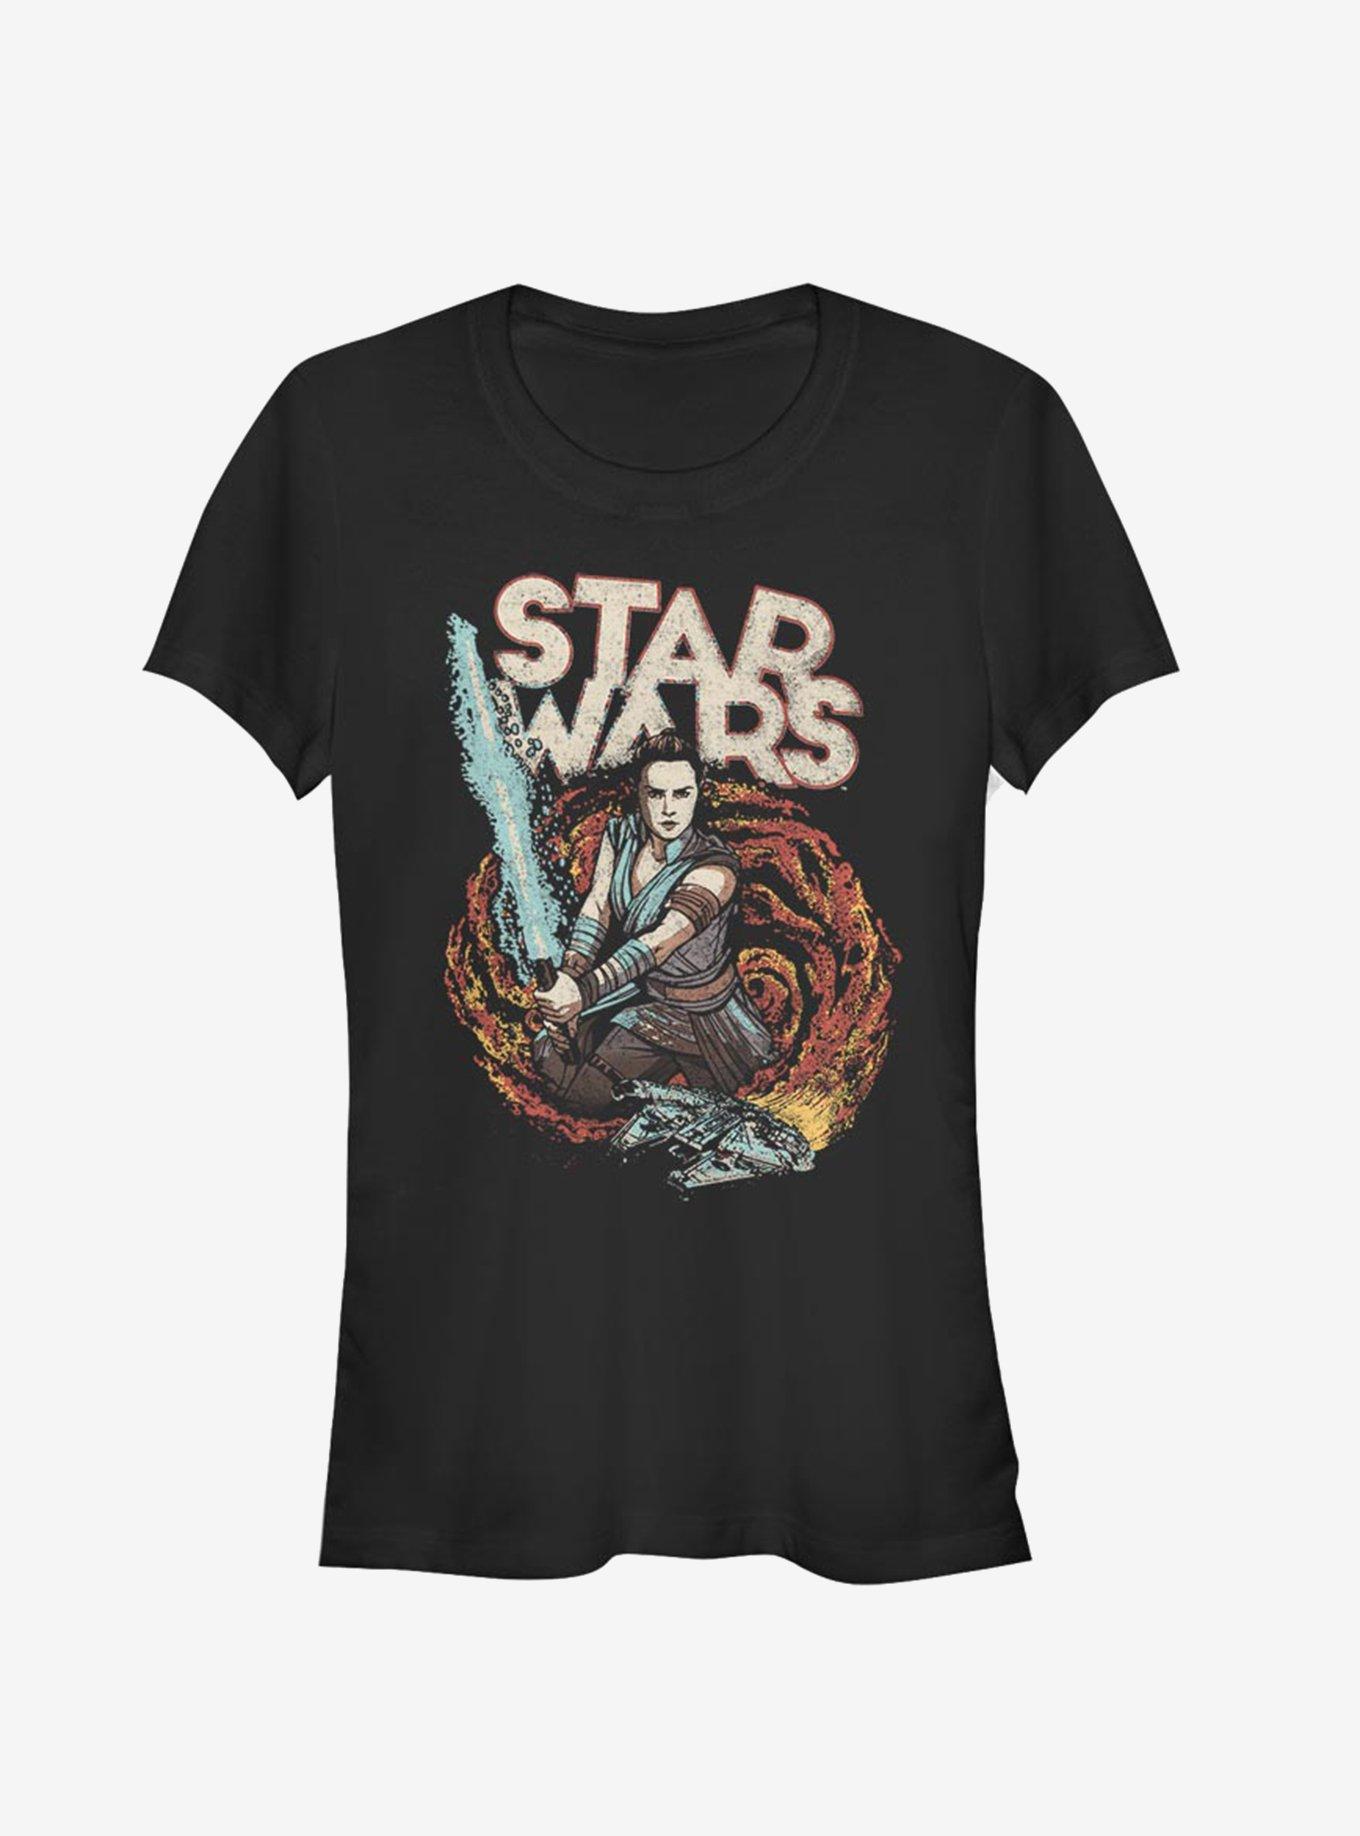 Star Wars Episode IX The Rise Of Skywalker Dark Nines Girls T-Shirt, BLACK, hi-res